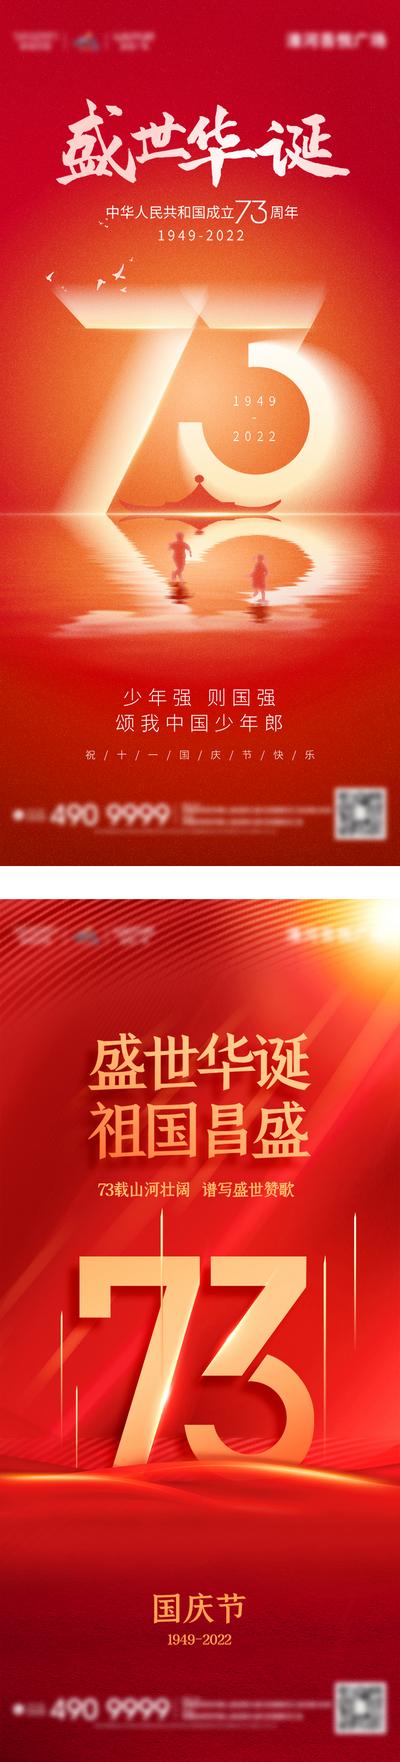 【南门网】广告 海报 背景板 国庆 电商 地产 医美 活动 邀请函